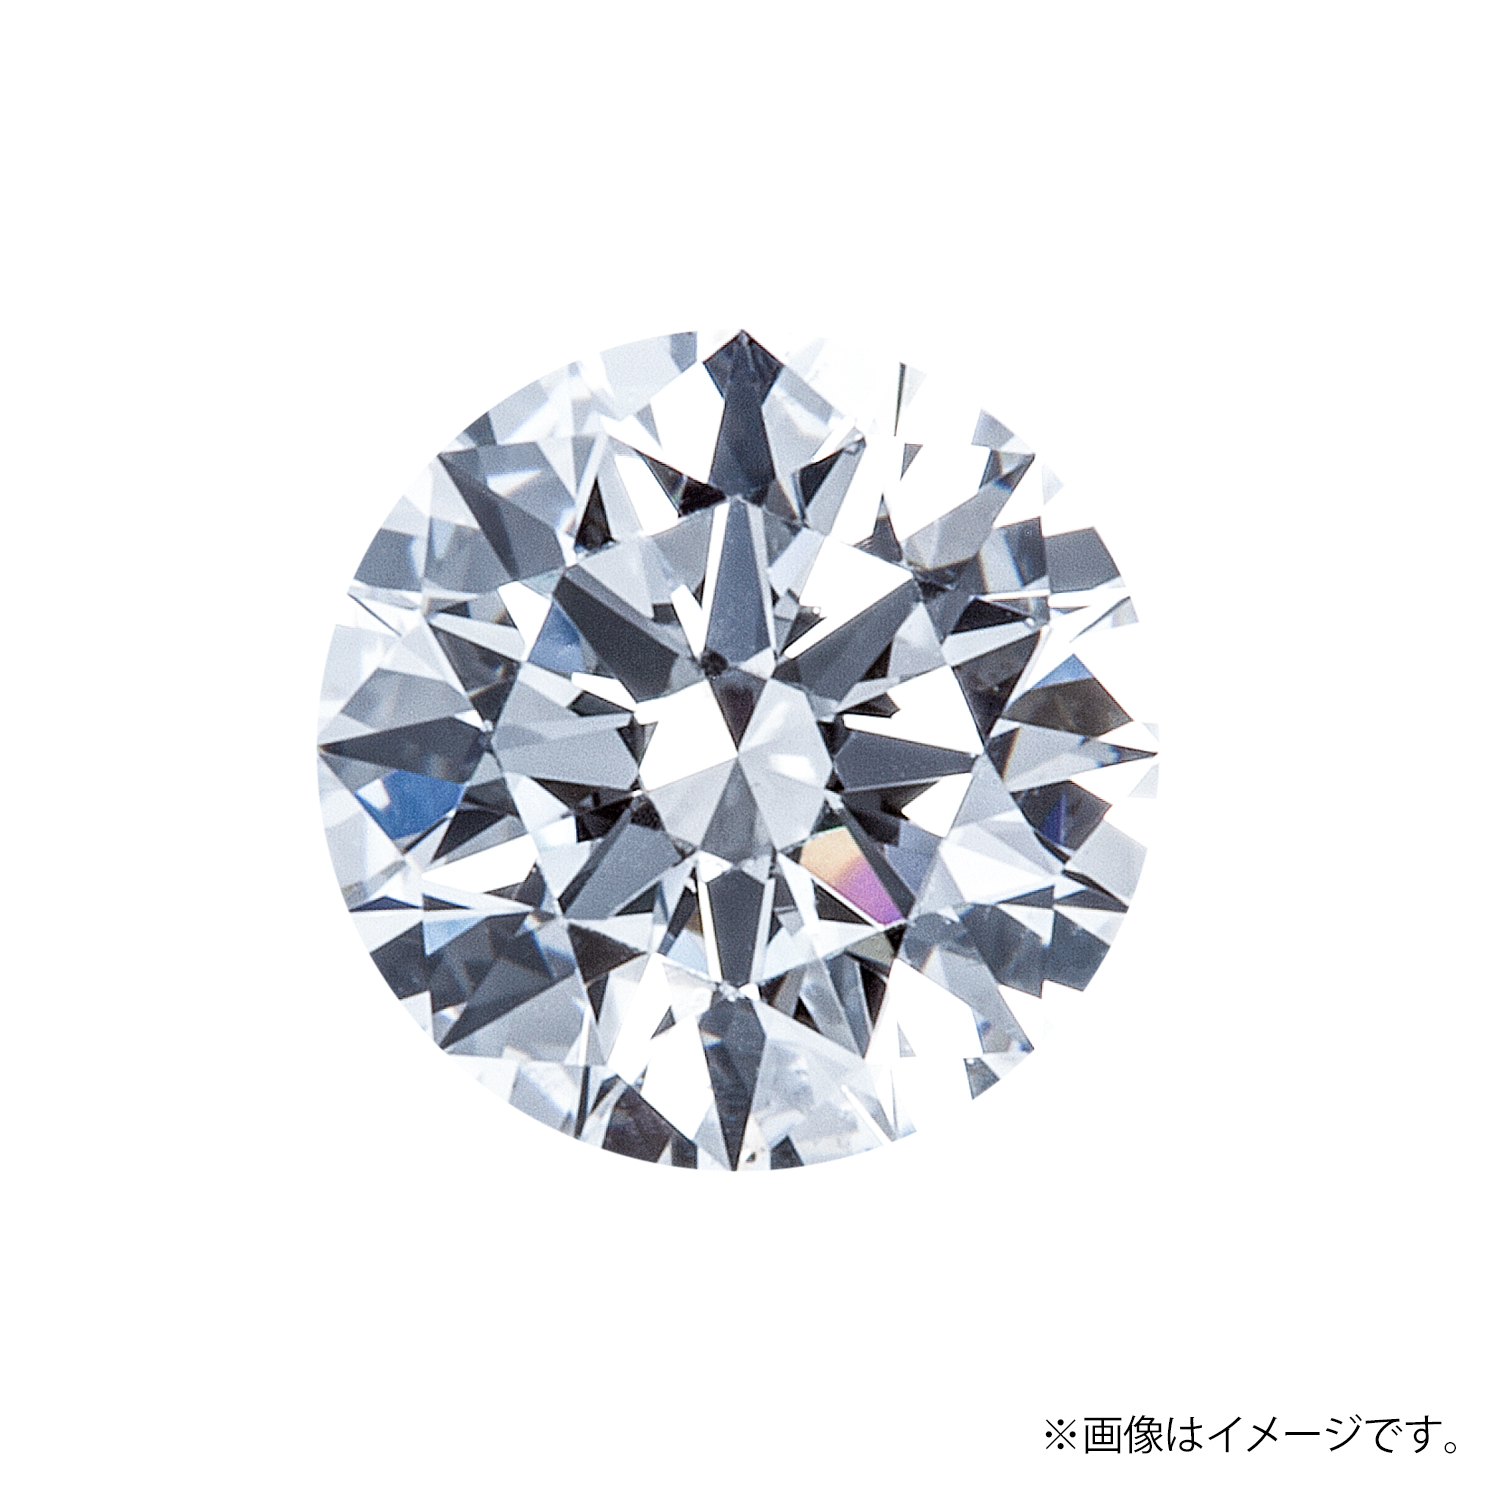 0.219ct Round ダイヤモンド / G / SI2 / GOOD